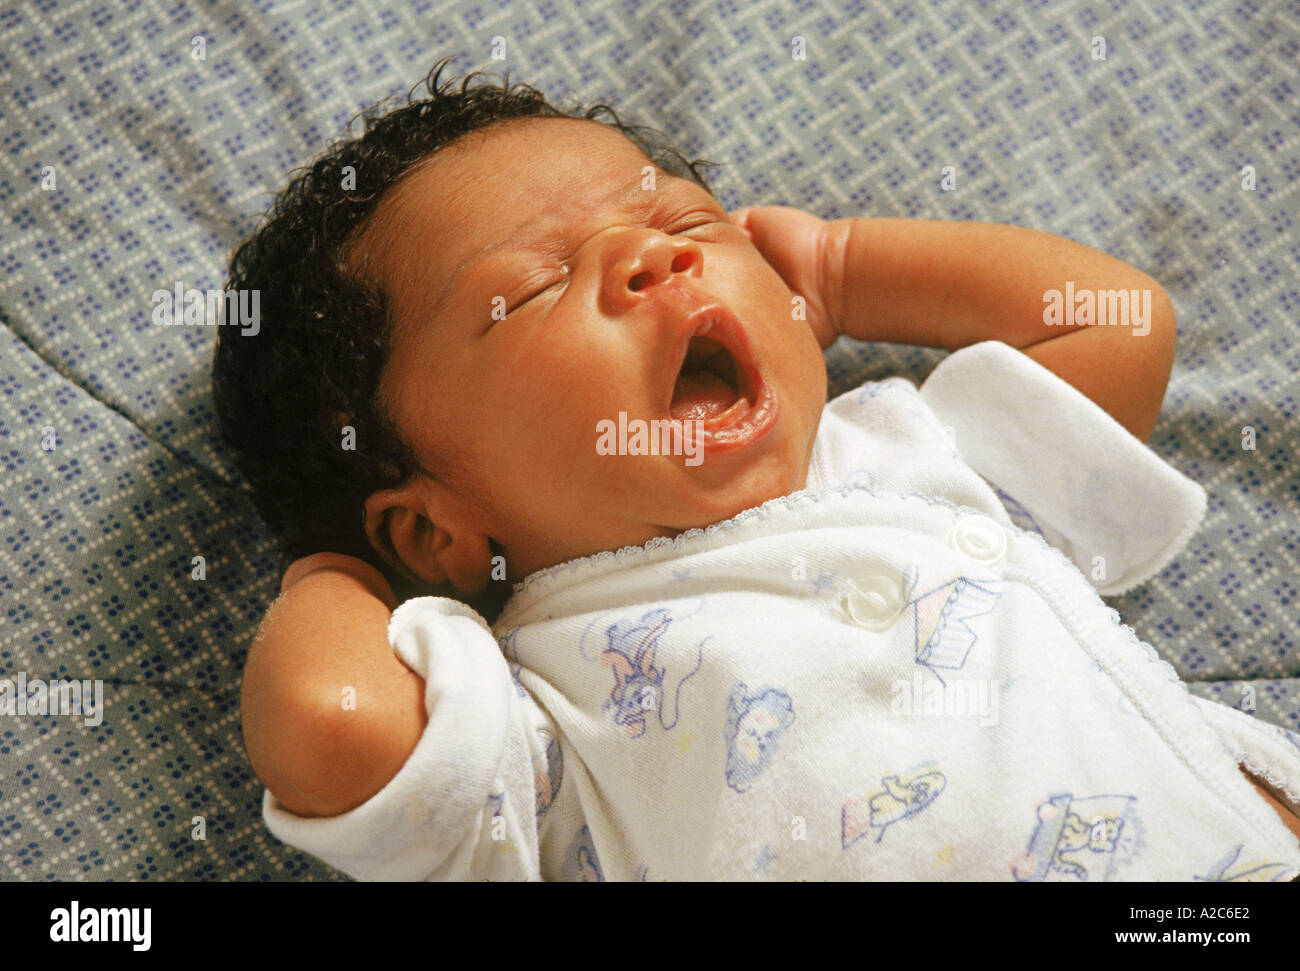 Eine schlafende Neugeborene 6 Wochen - 2 Monate alten Babys Kinder Kind Baby gähnt liegt auf einer Decke schließen Augen schlafen schlafen Draufsicht oben POV HERR © Myrleen Pearson Stockfoto